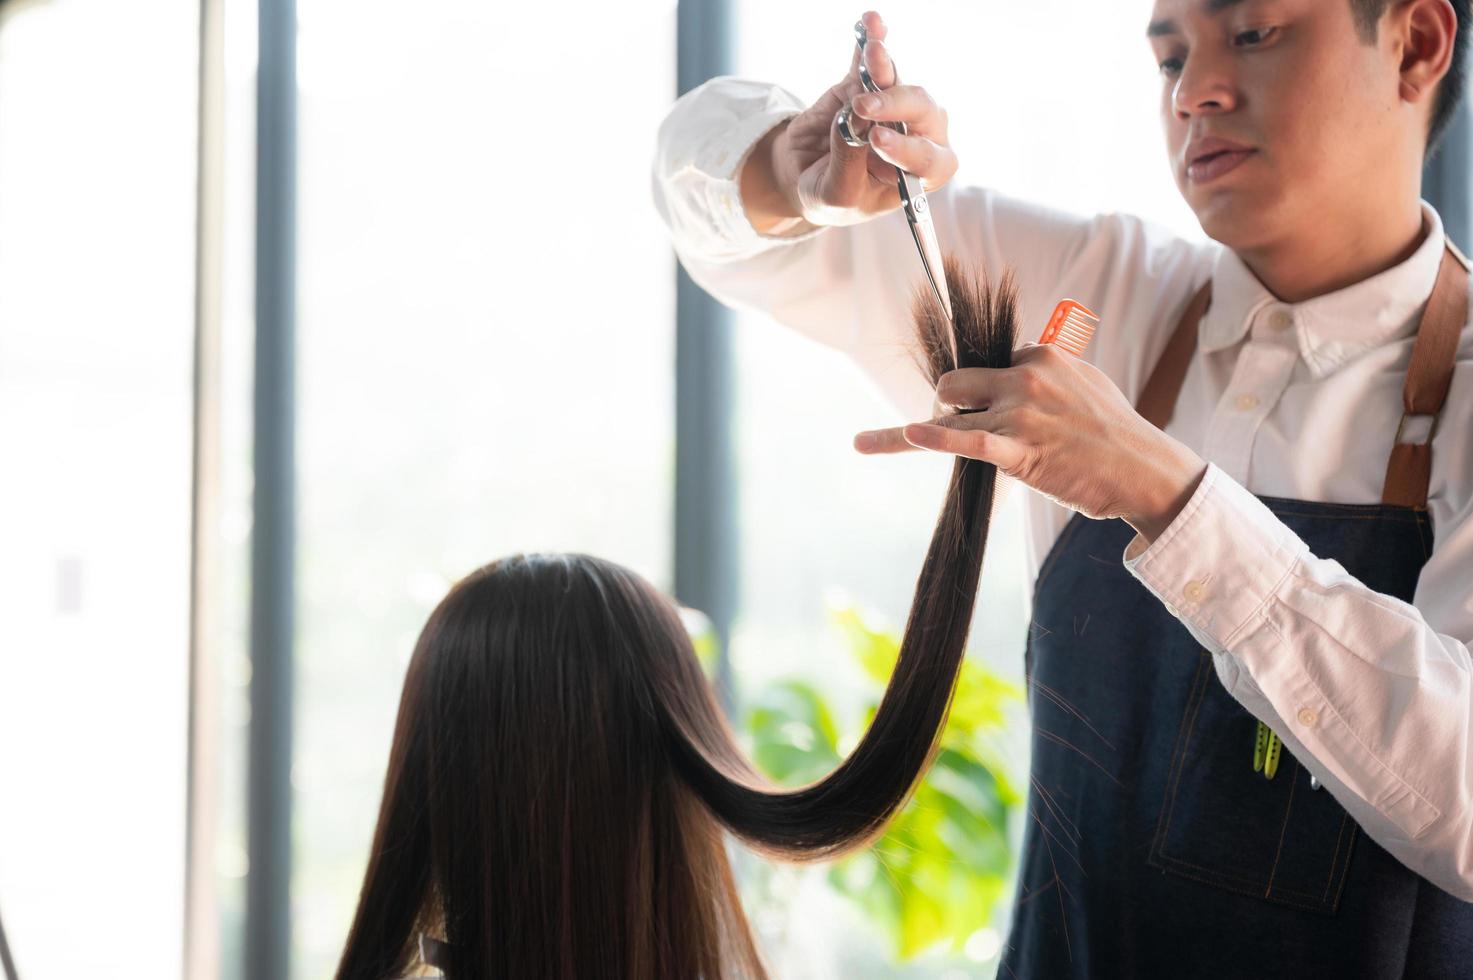 klientin, die einen prozess zur behandlung eines haares mit friseur im schönheitssalon hat foto